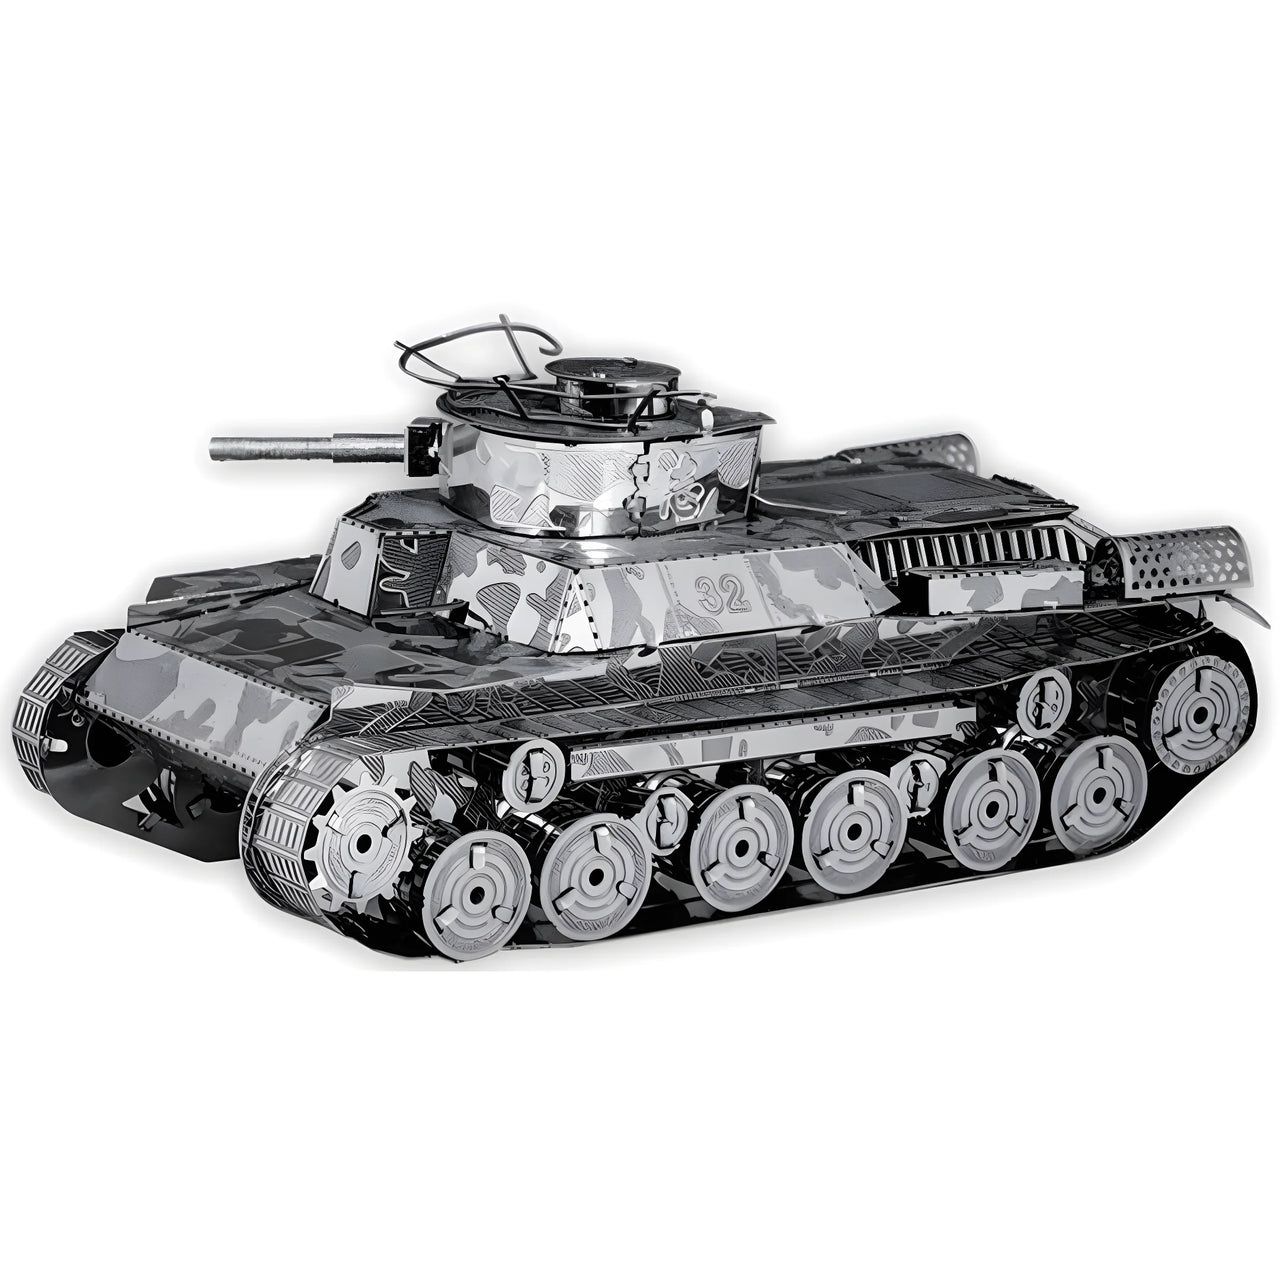 FMW202 ची हा टैंक (निर्माण योग्य) (बंद मॉडल)